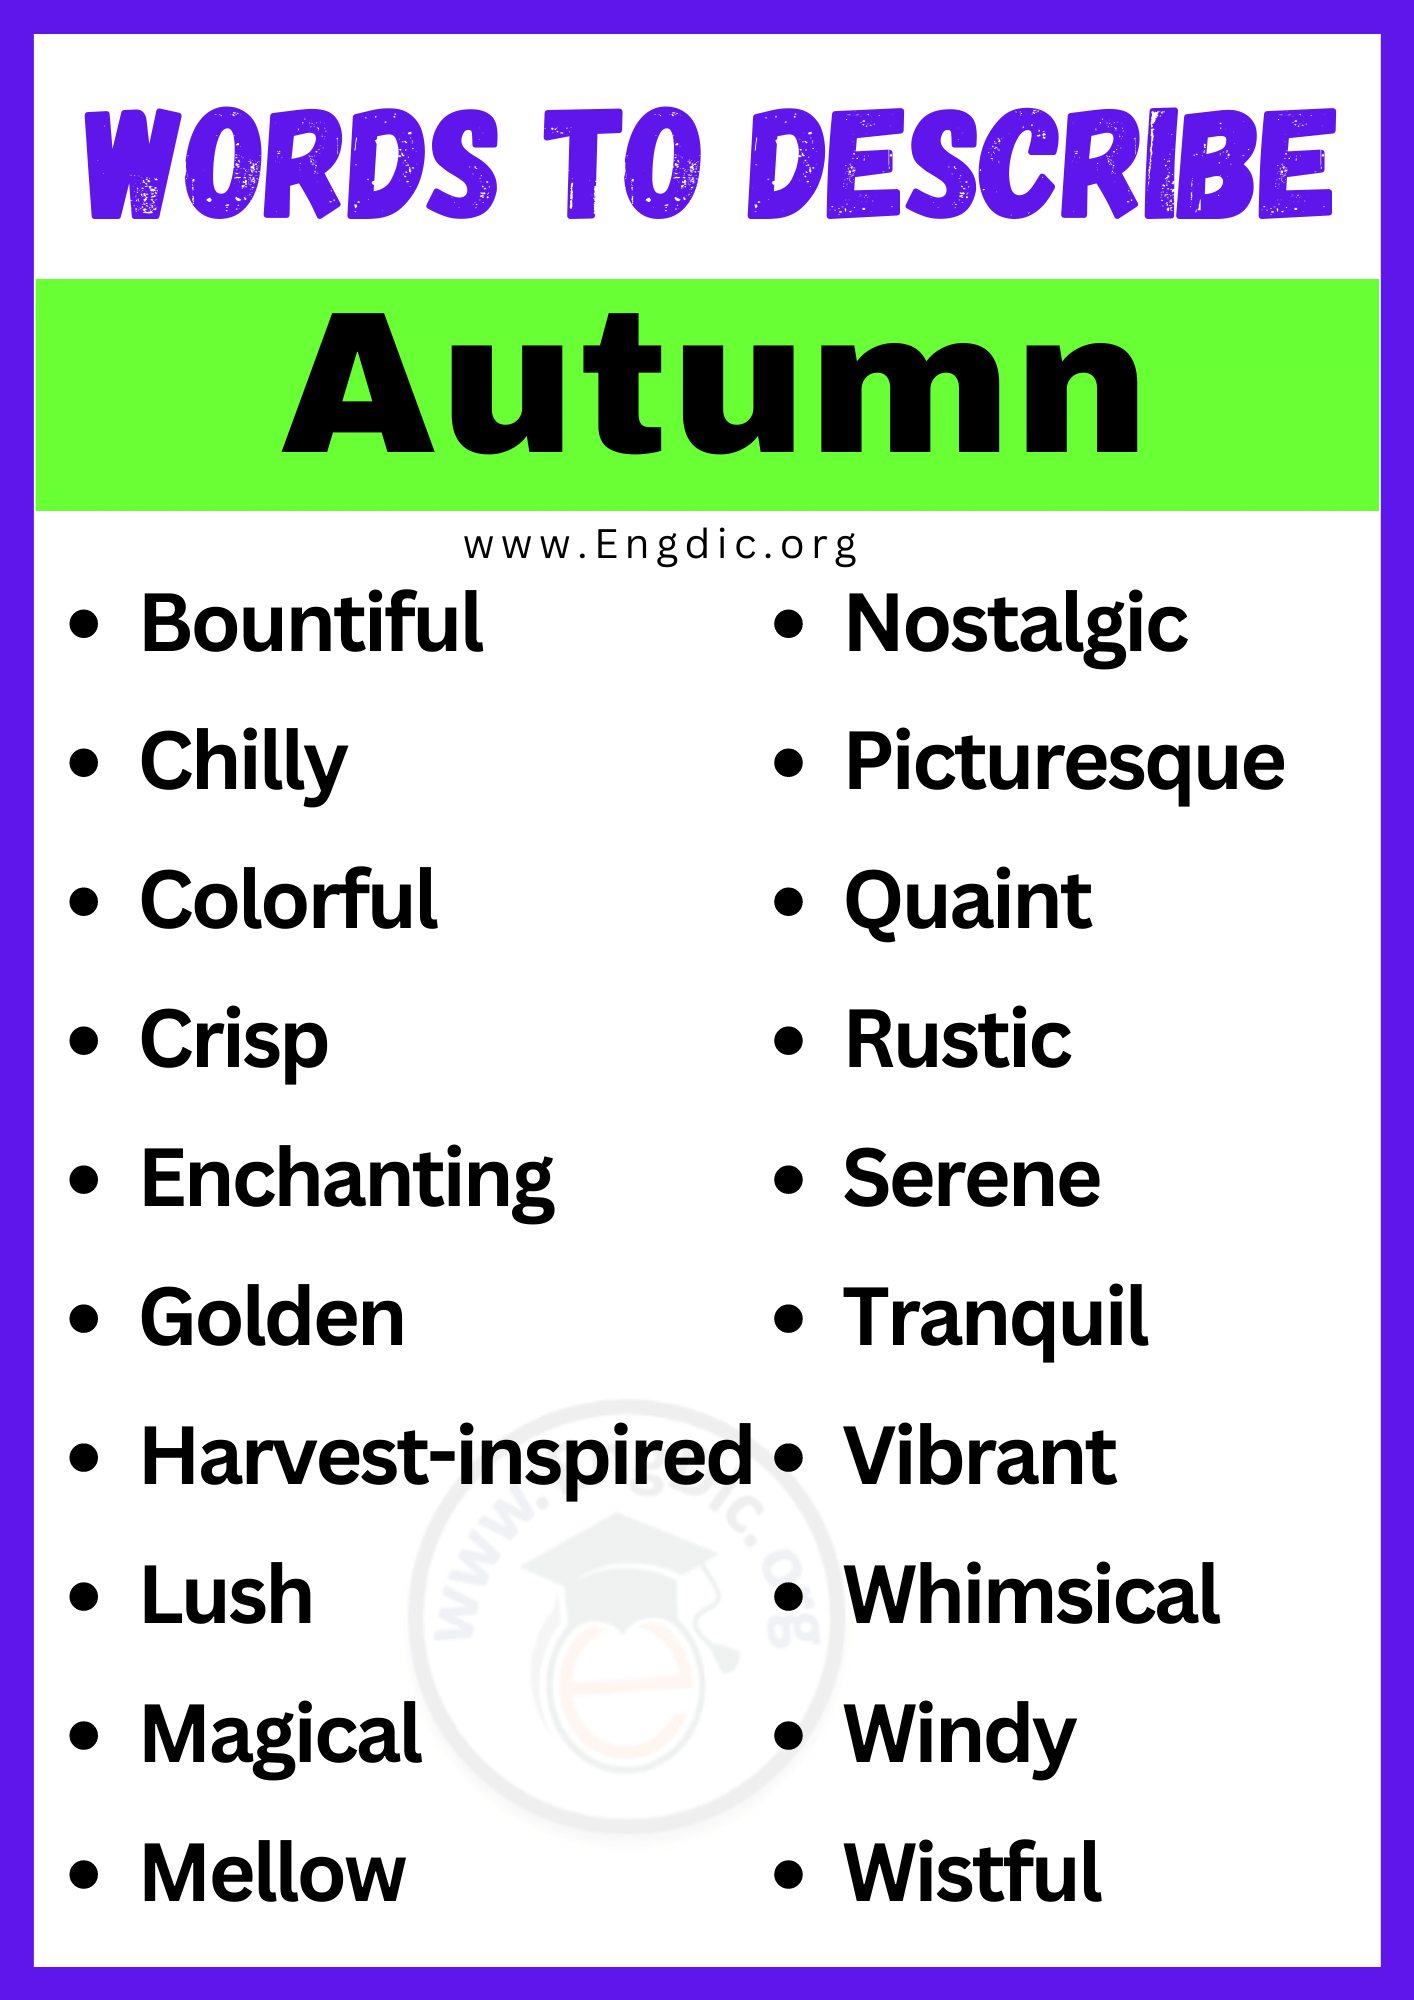 Words to Describe Autumn